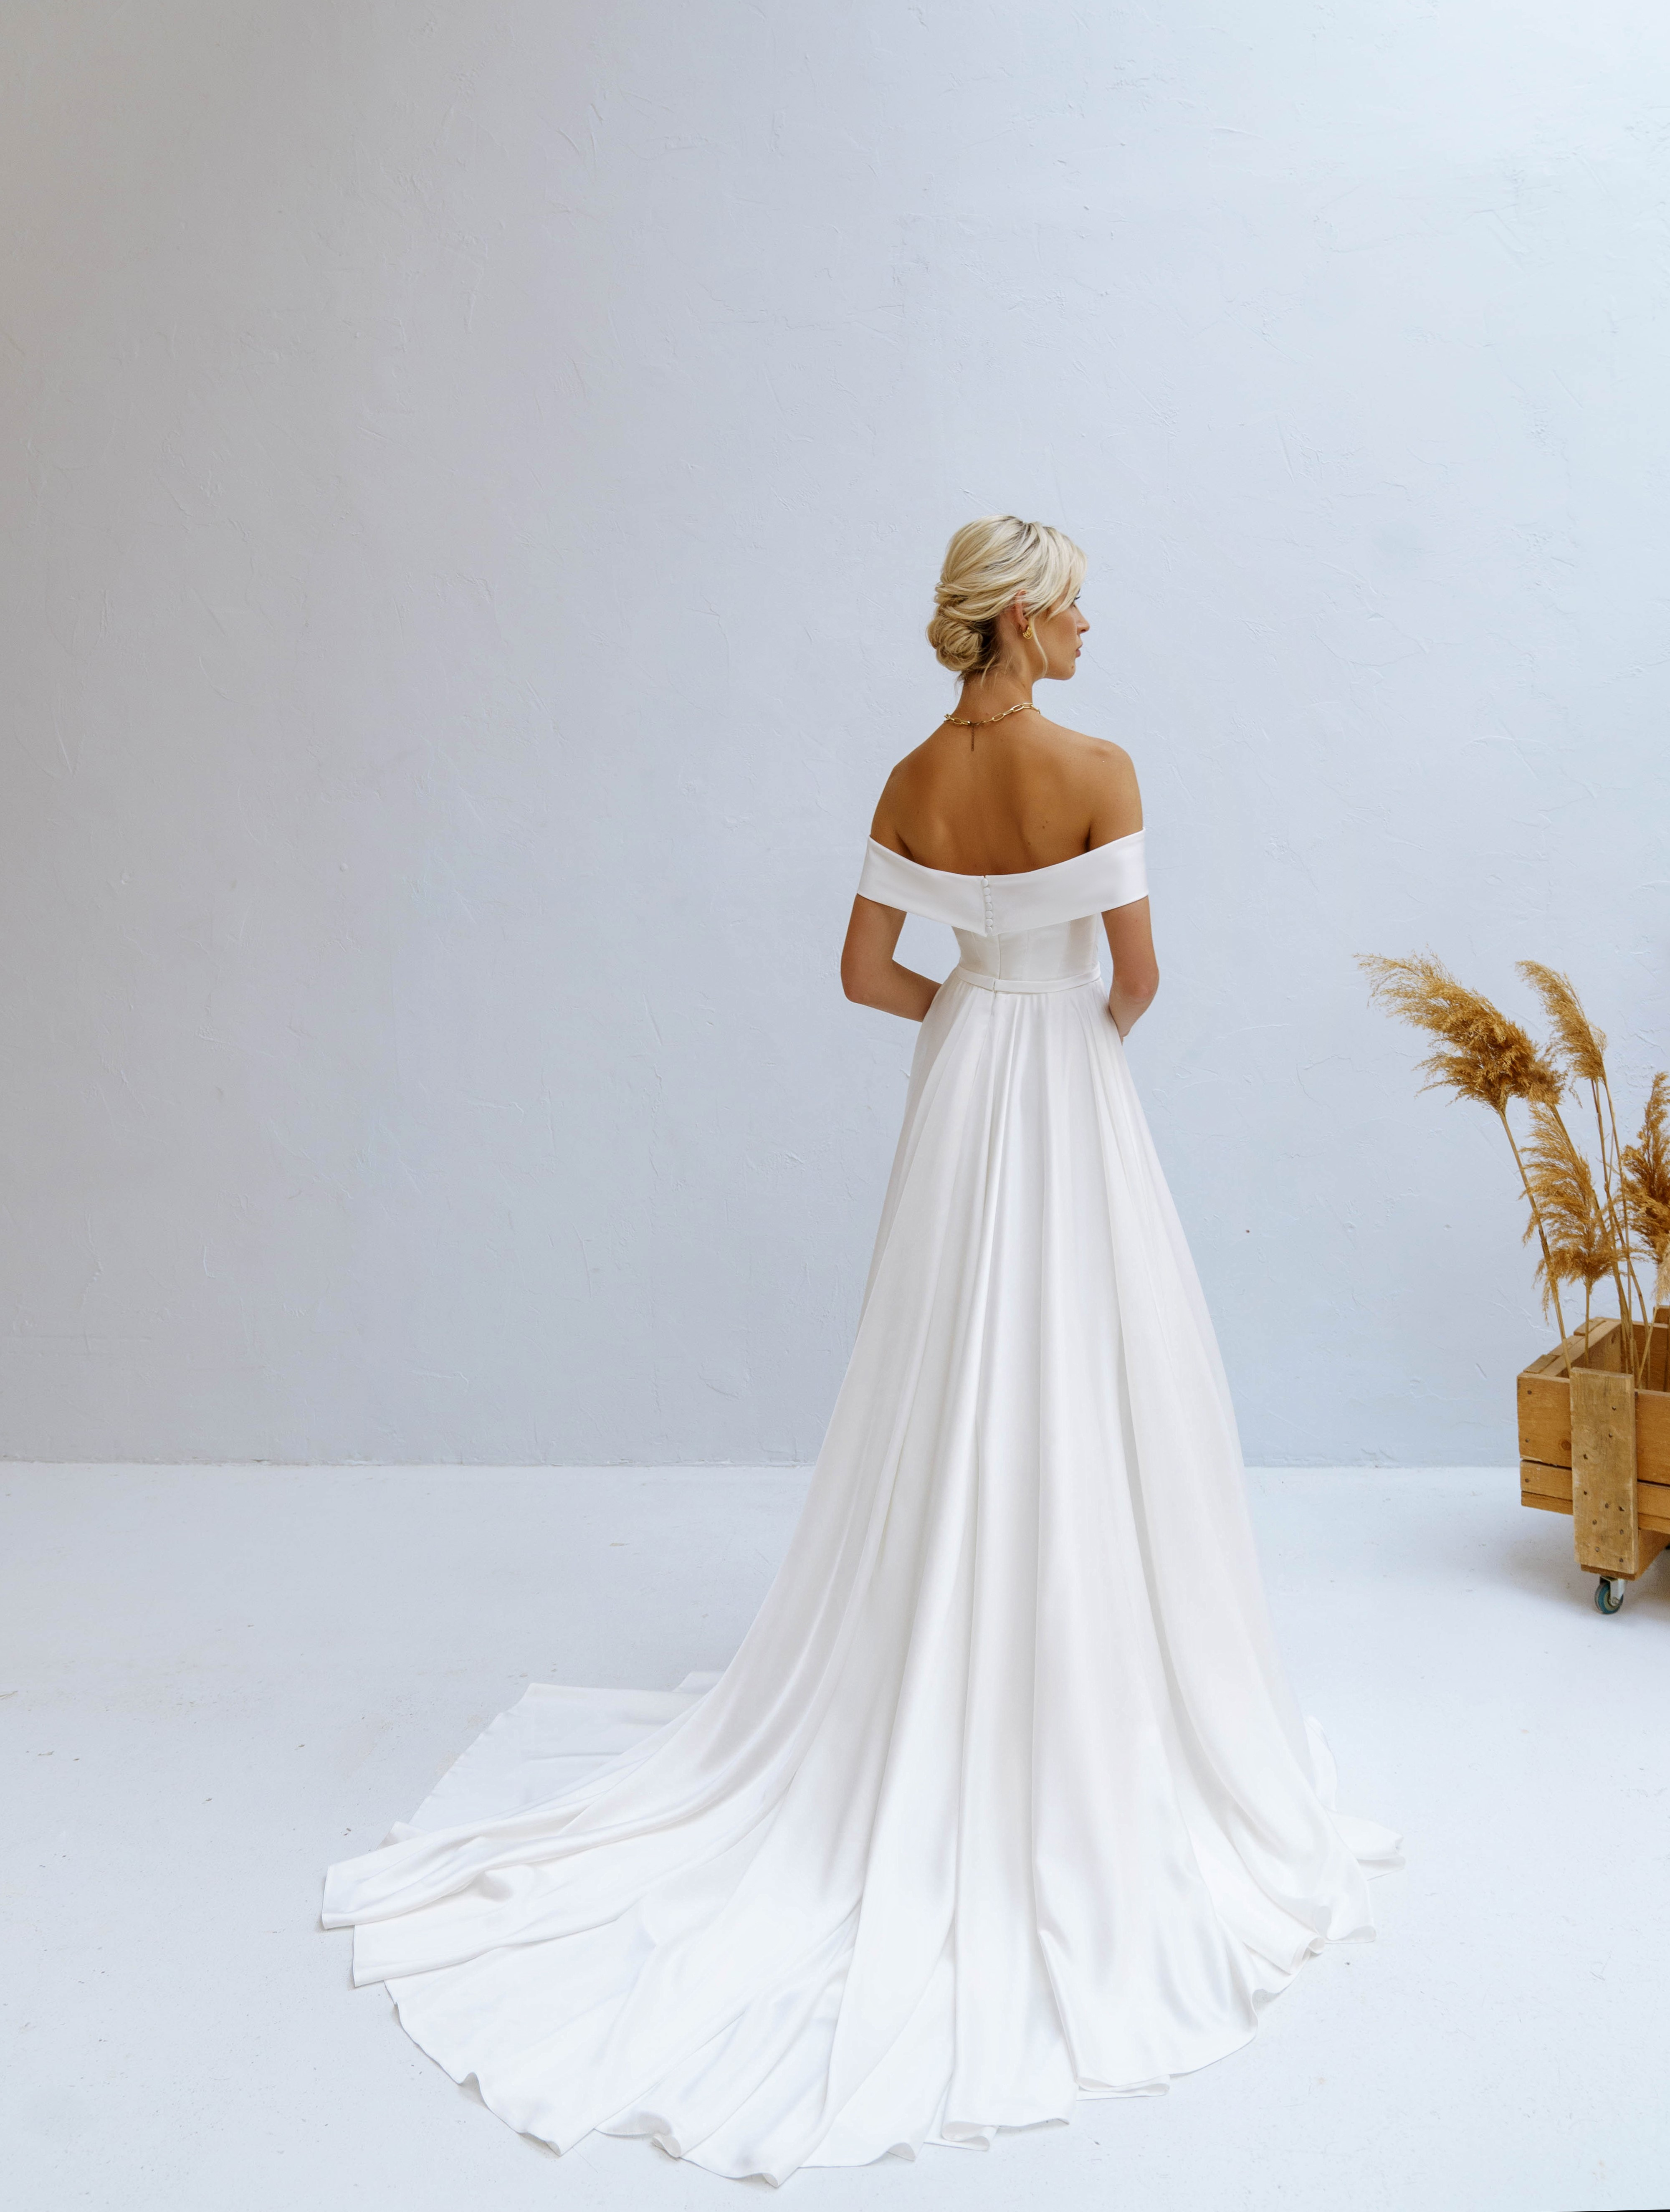 Купить свадебное платье «Фернанда» Наталья Романова из коллекции Блаш Бриз 2022 года в салоне «Мэри Трюфель»